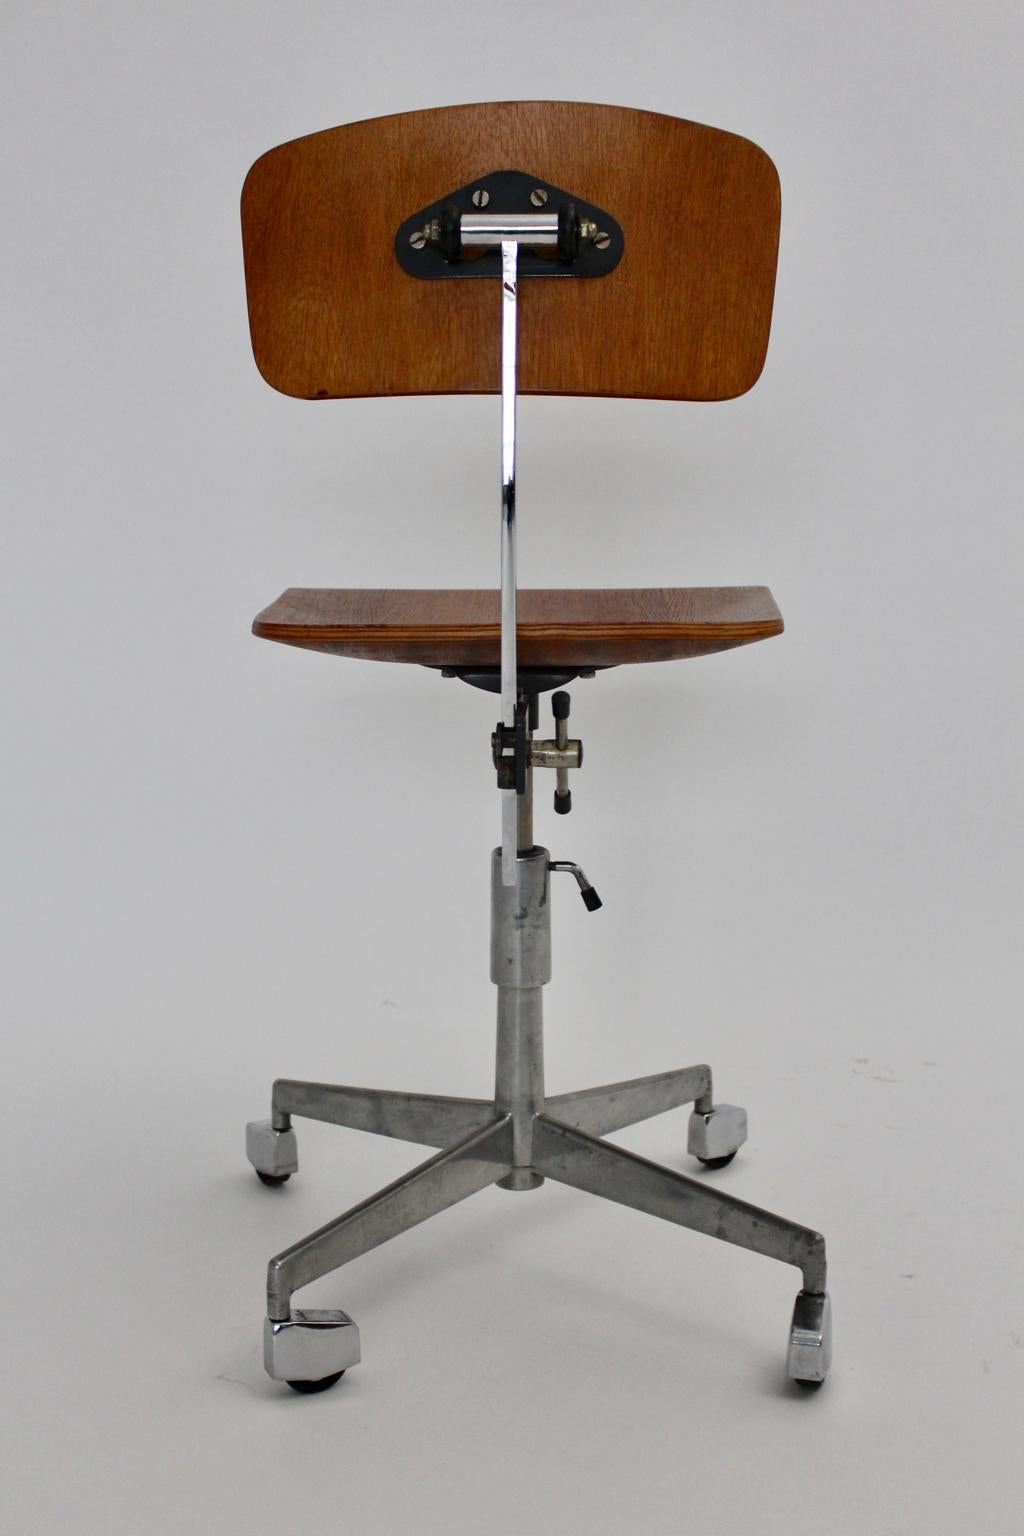 Laminated Mid-Century Modern Vintage Brown Beech Desk Chair Jorgen Rasmussen 1950s Denmark For Sale